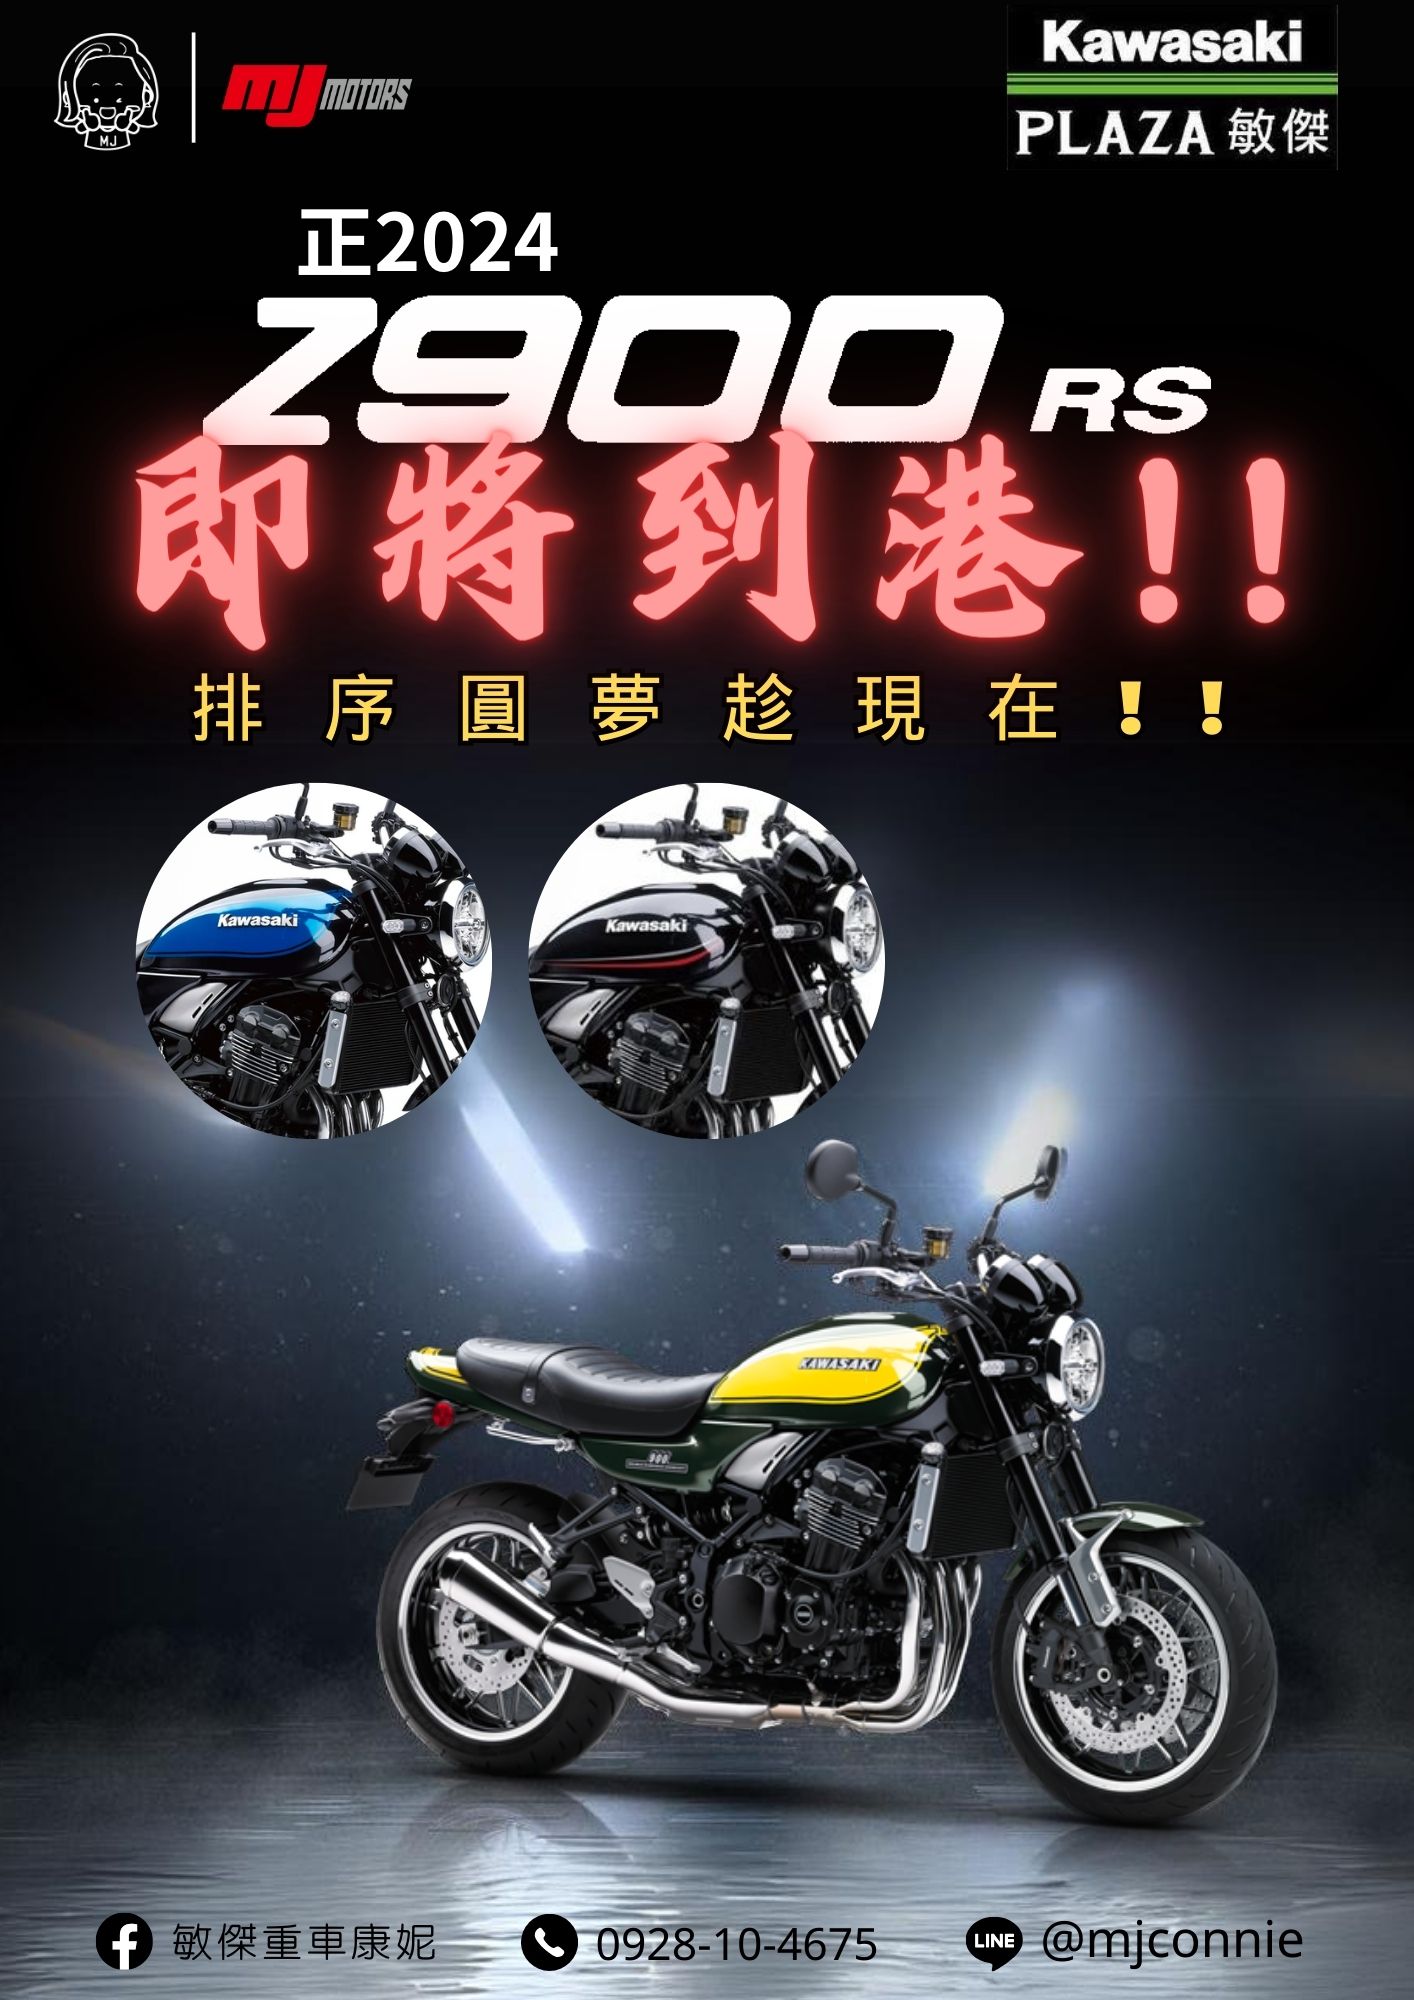 【敏傑車業資深銷售專員 康妮 Connie】KAWASAKI Z900RS - 「Webike-摩托車市」 『敏傑康妮』正2024 Kawasaki Z900RS 即將抵台啦!!! 上一批還沒買的的朋友~ 現在可先卡位瞜^^